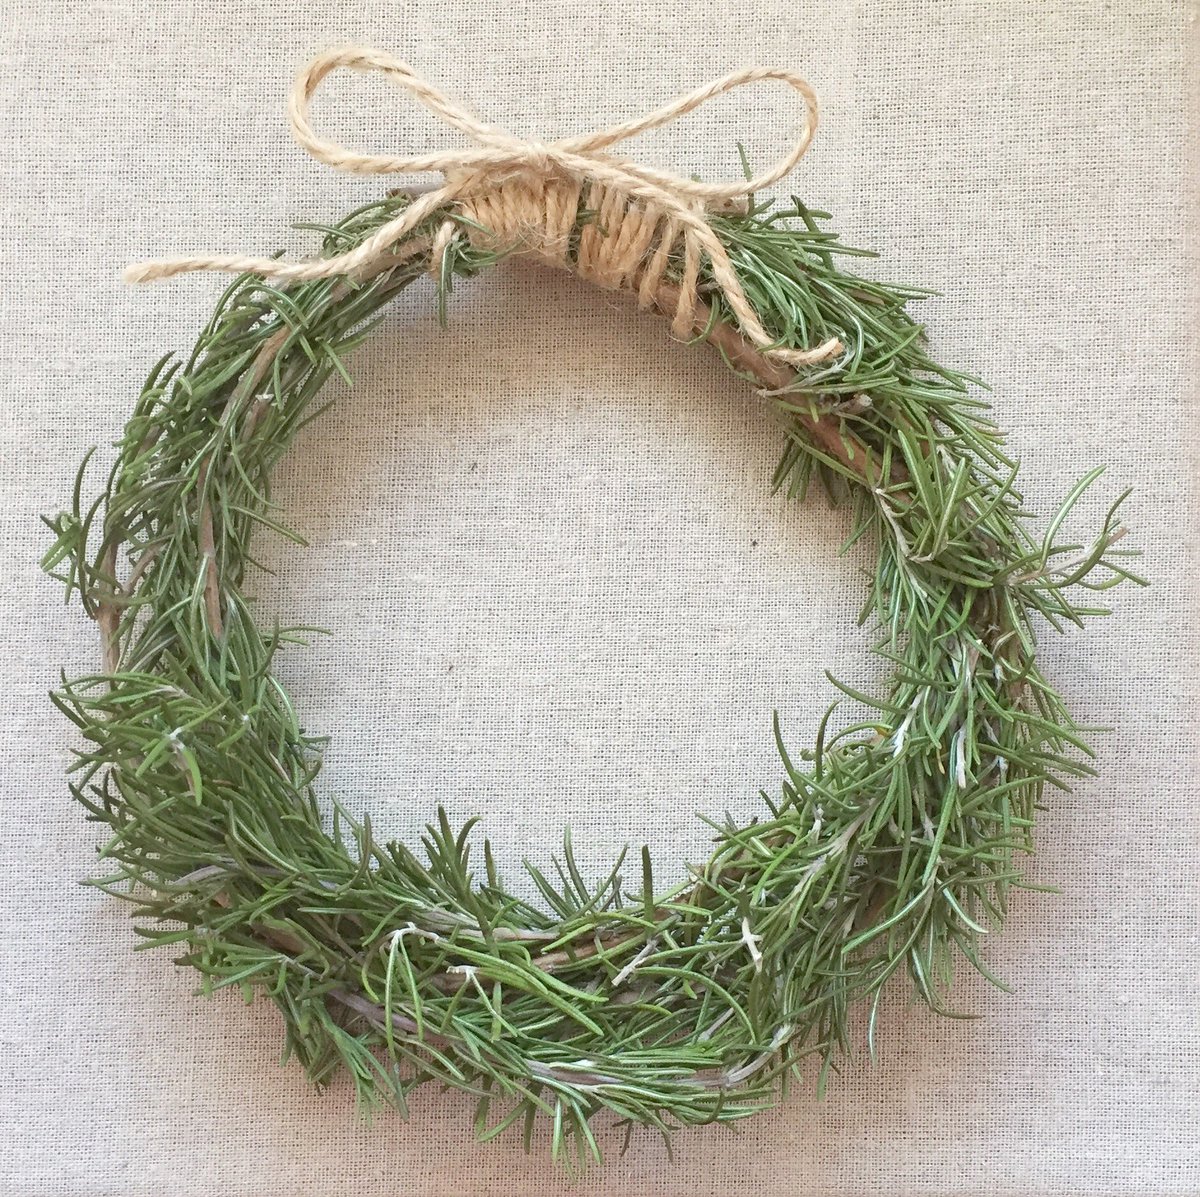 Livingstone Jp Twitter પર Rosemary Wreath Smells So Good ローズマリーのリースを作ってみました 良い香りに癒されます Rosemary Wreath Herb ローズマリーリース ハーブリース Herbwreath T Co Fdt54ttrkc Twitter